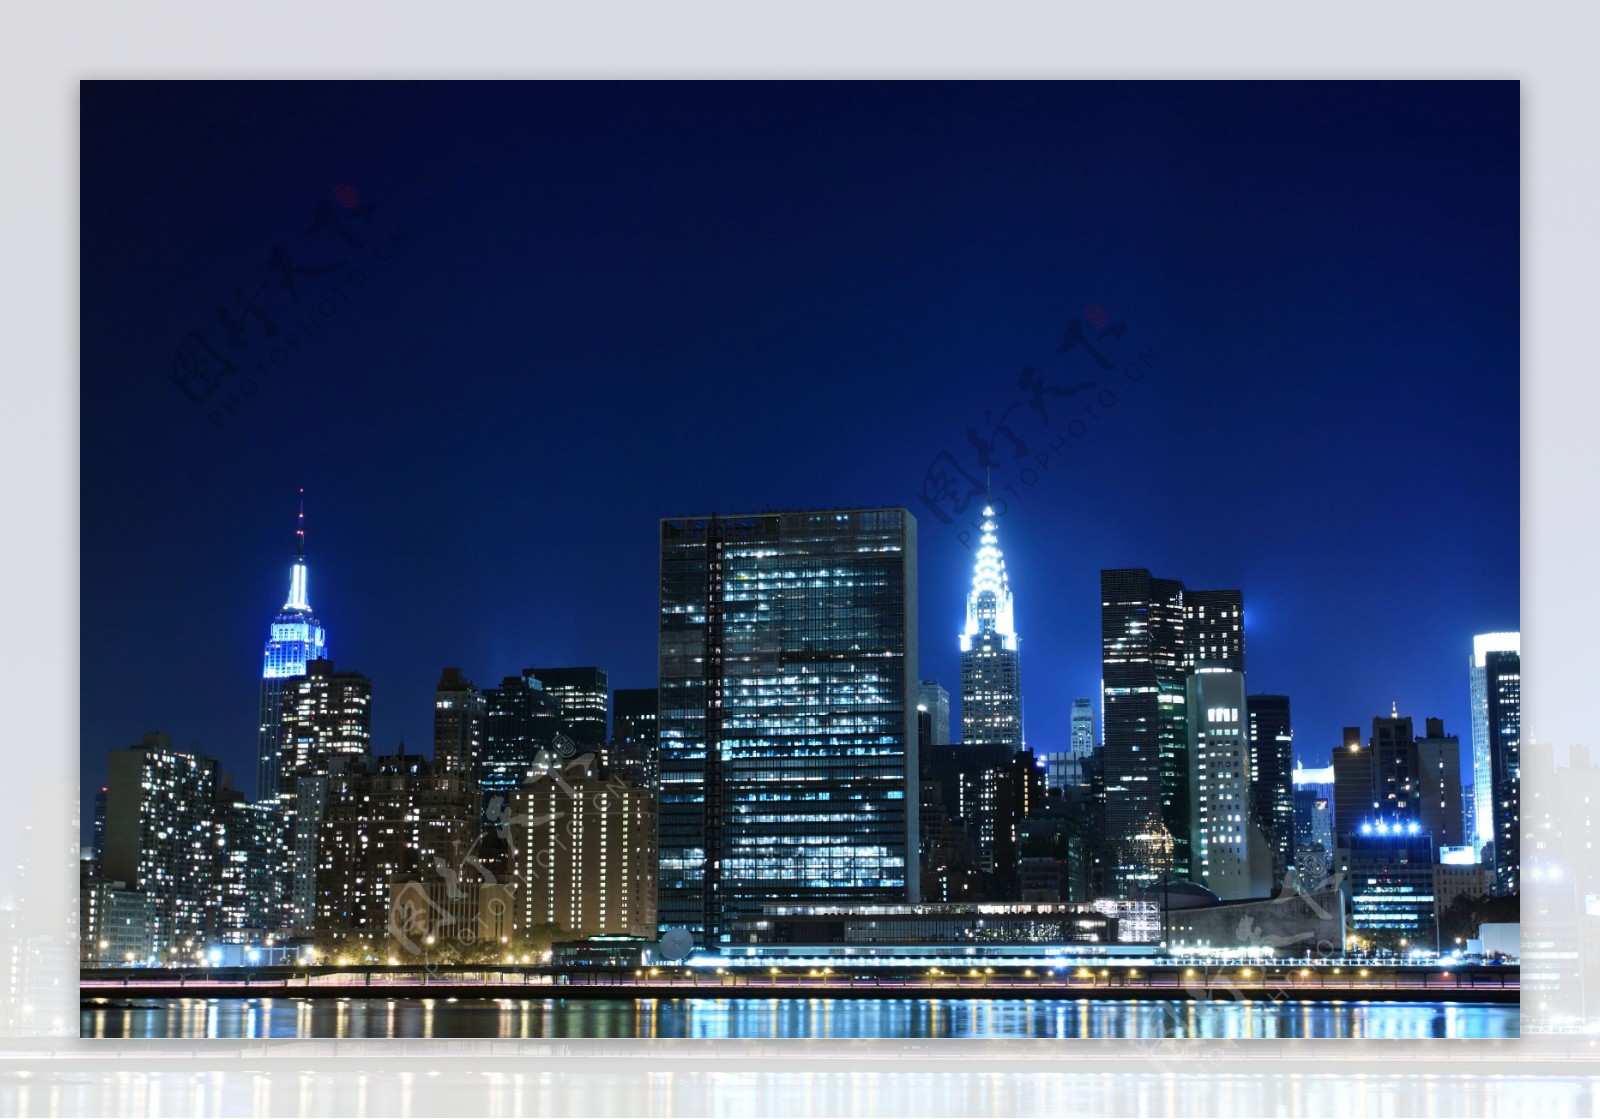 纽约摩登都市繁华夜景图片